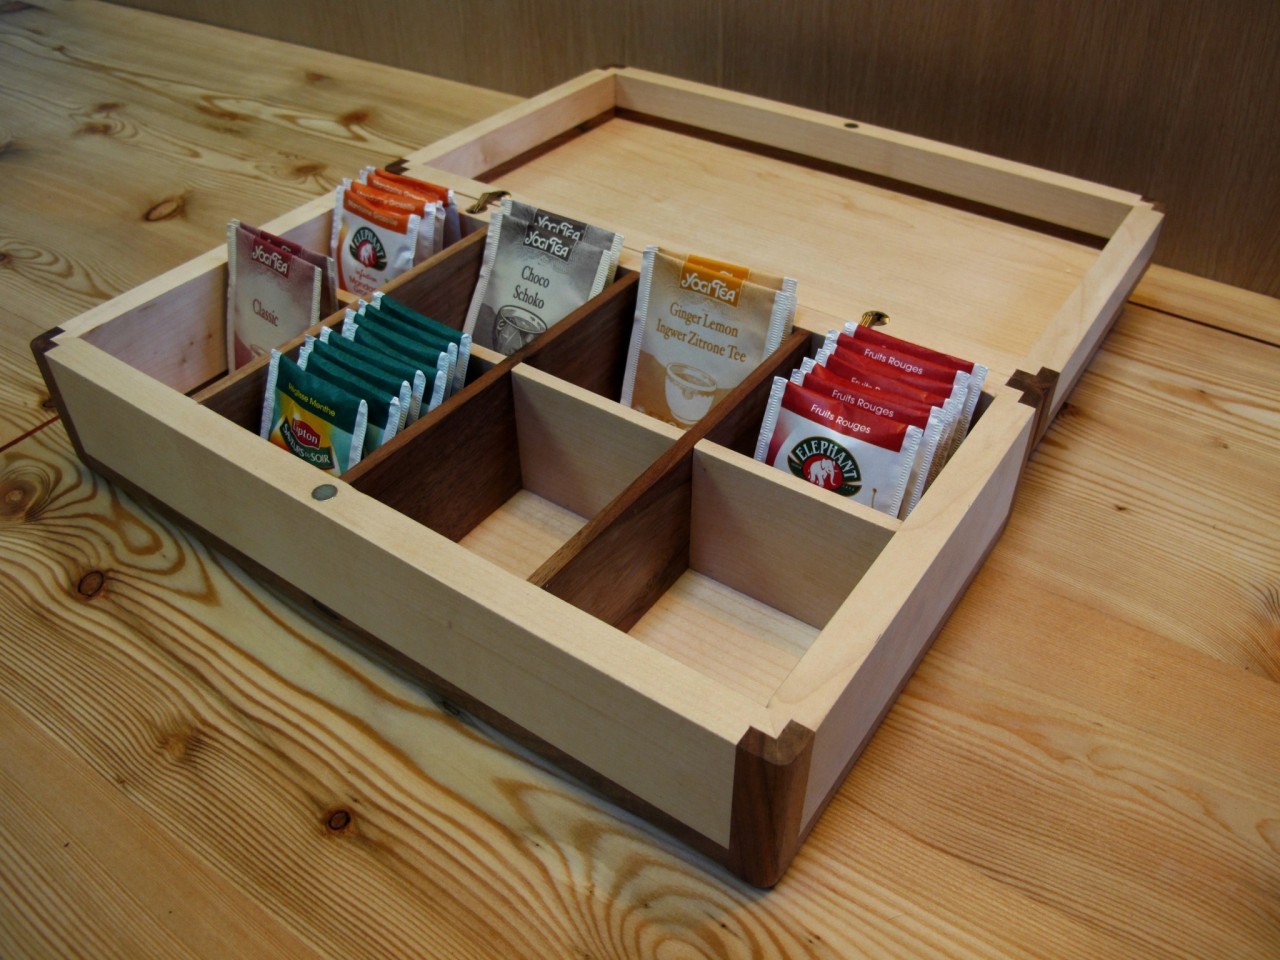 Il y a 8 compartiments qui permettent de ranger vos sachets de thé et de tisane.